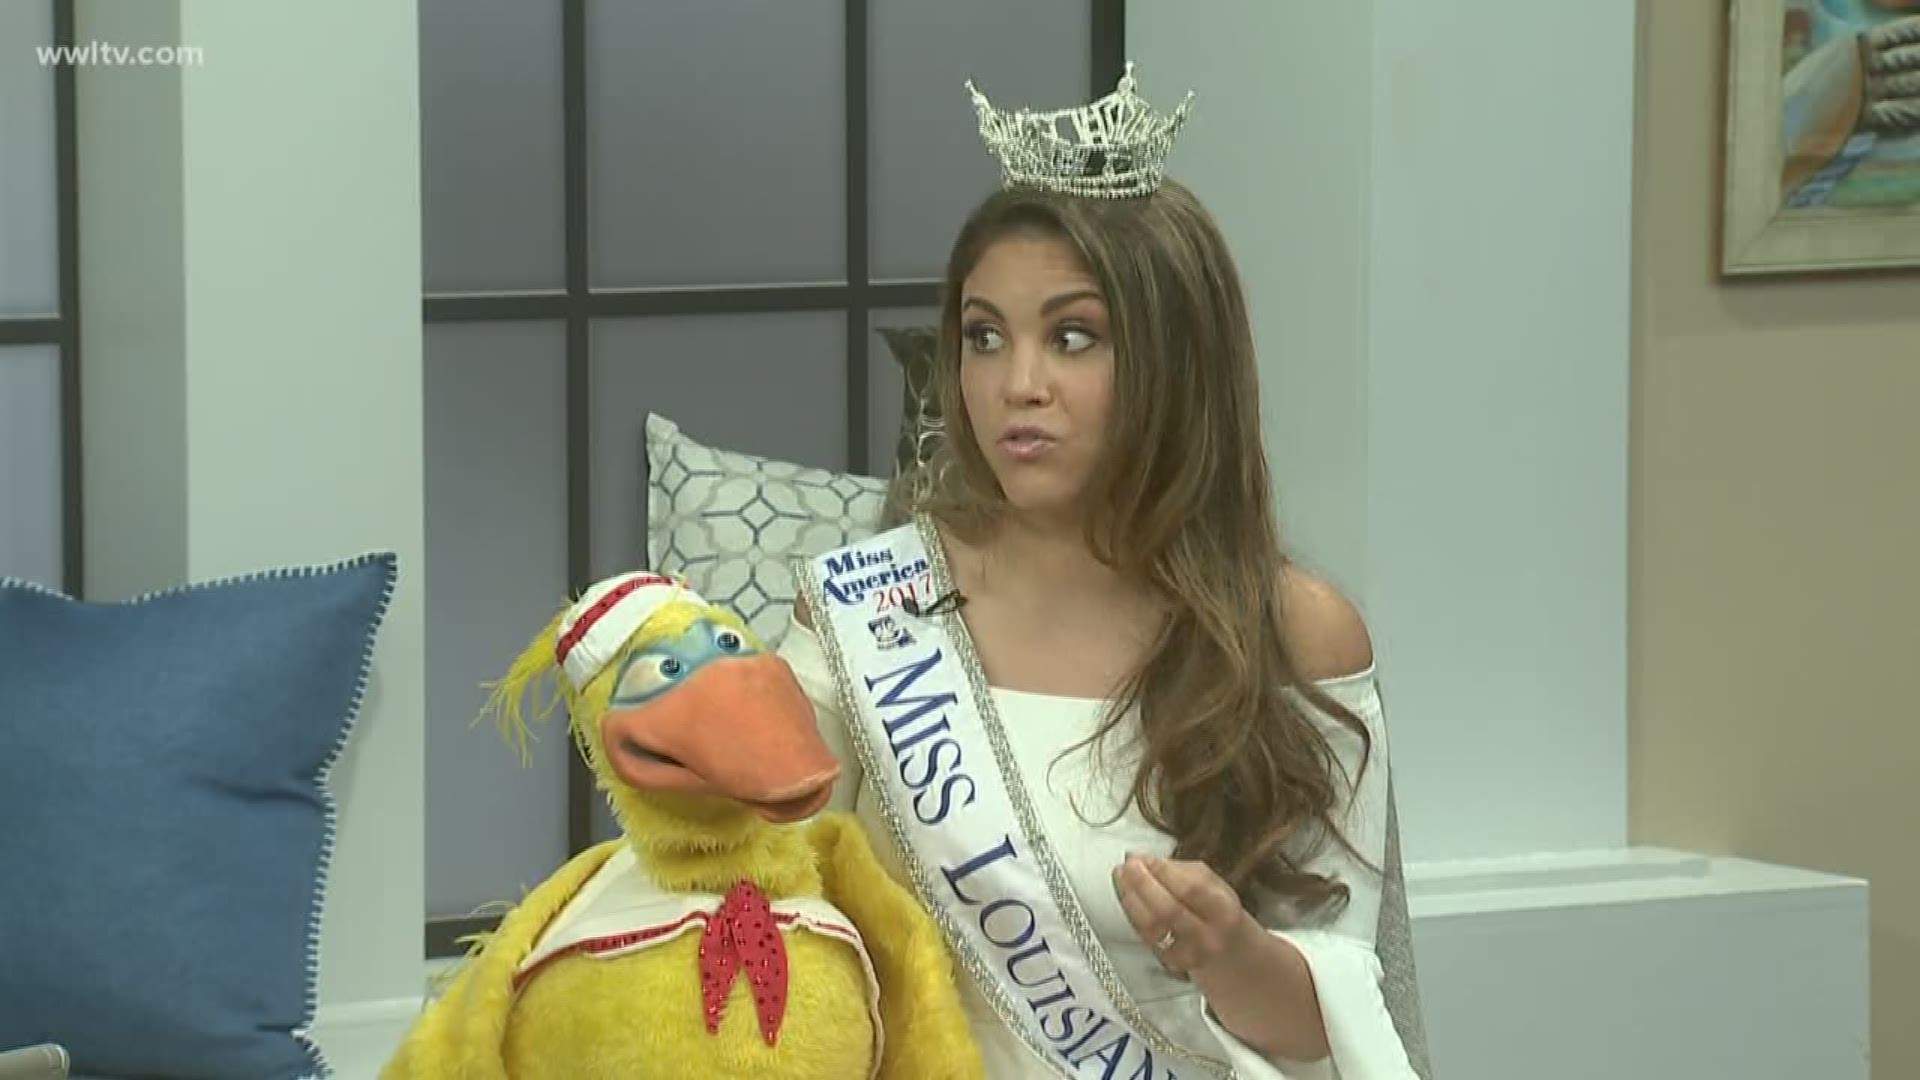 Miss America - Miss Louisiana Laryssa Bonacquisti